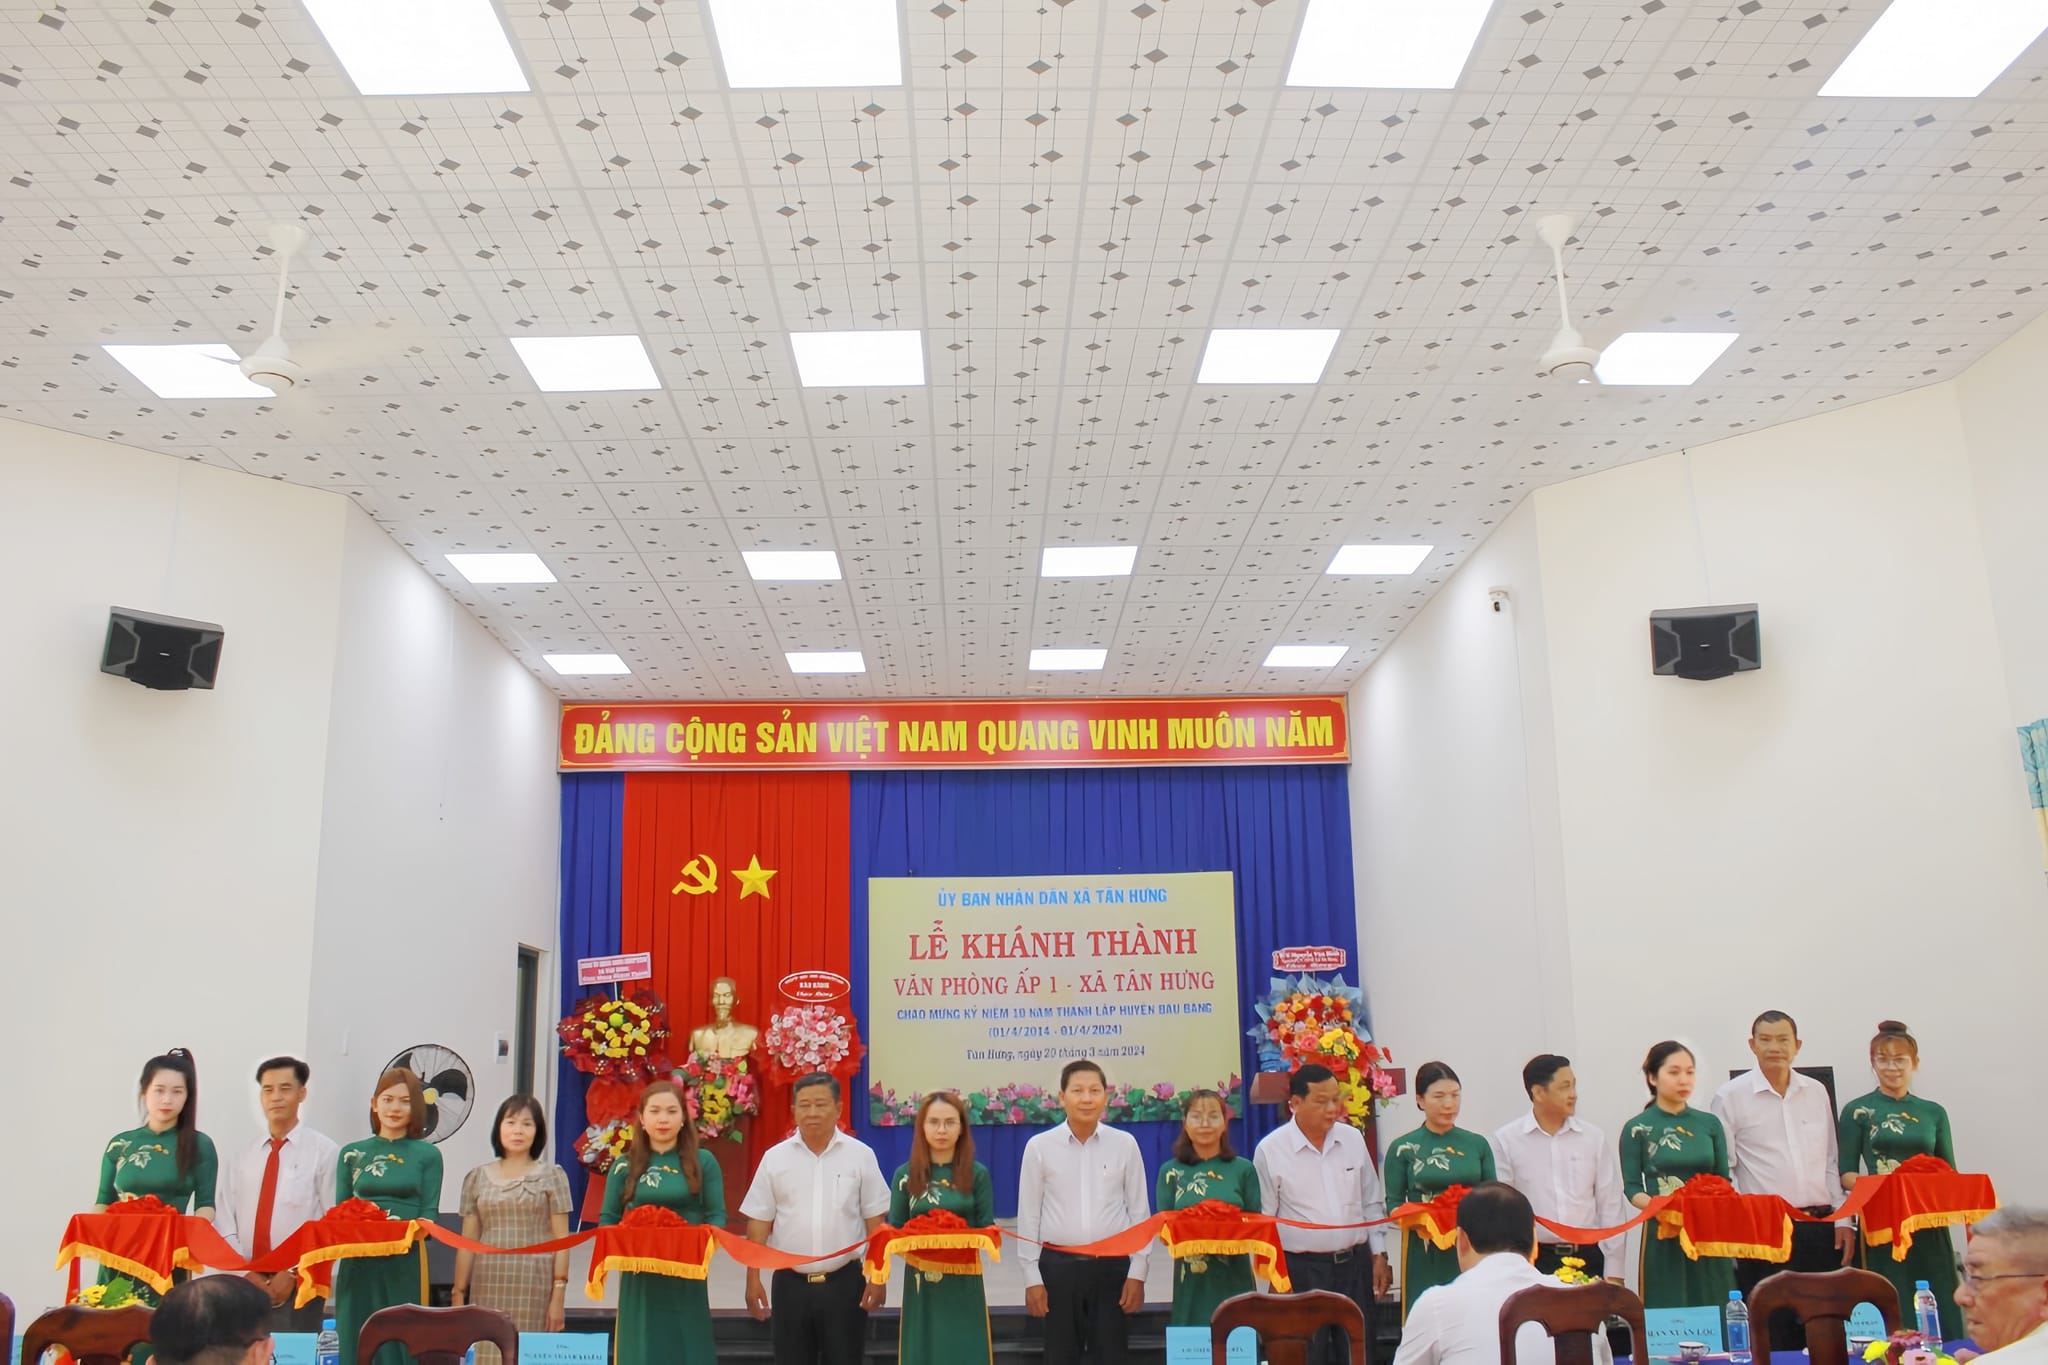 UBND xã Tân Hưng tổ chức lễ khánh thành văn phòng ấp 1